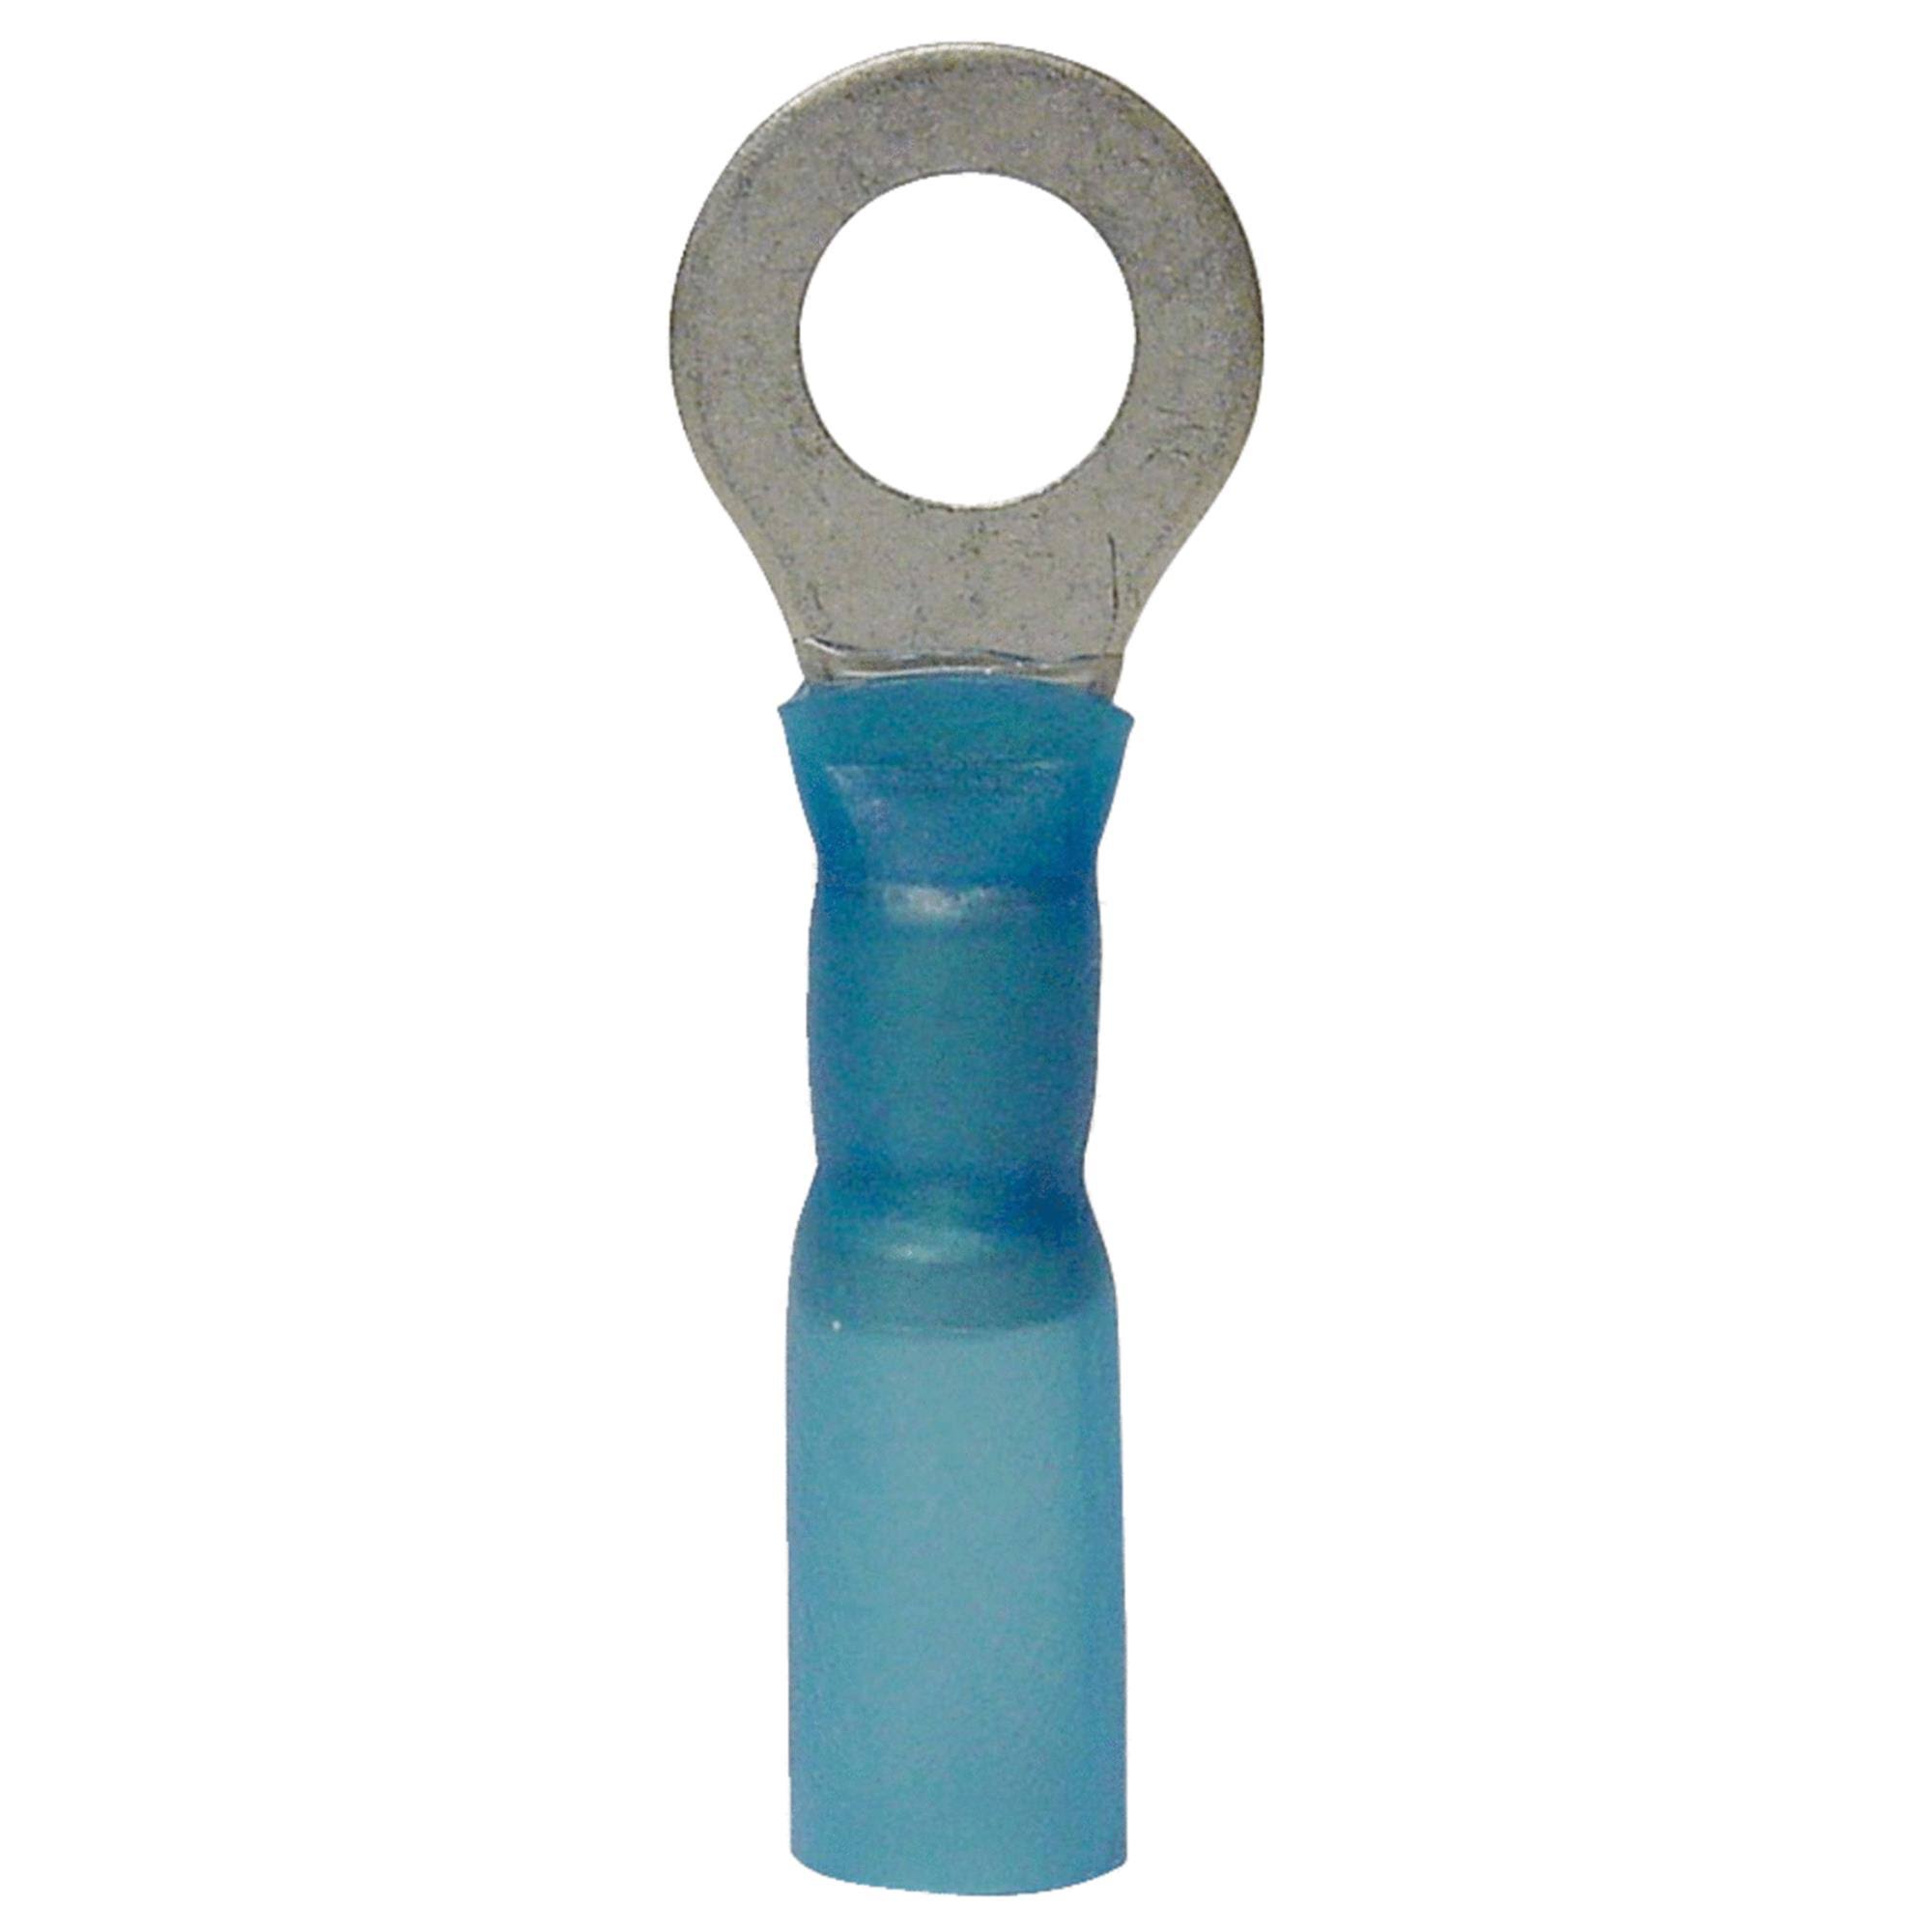 Gardner Bender AMT-103 16-14 AWG Nylon Insulated Ring Terminal - Blue, 3pk